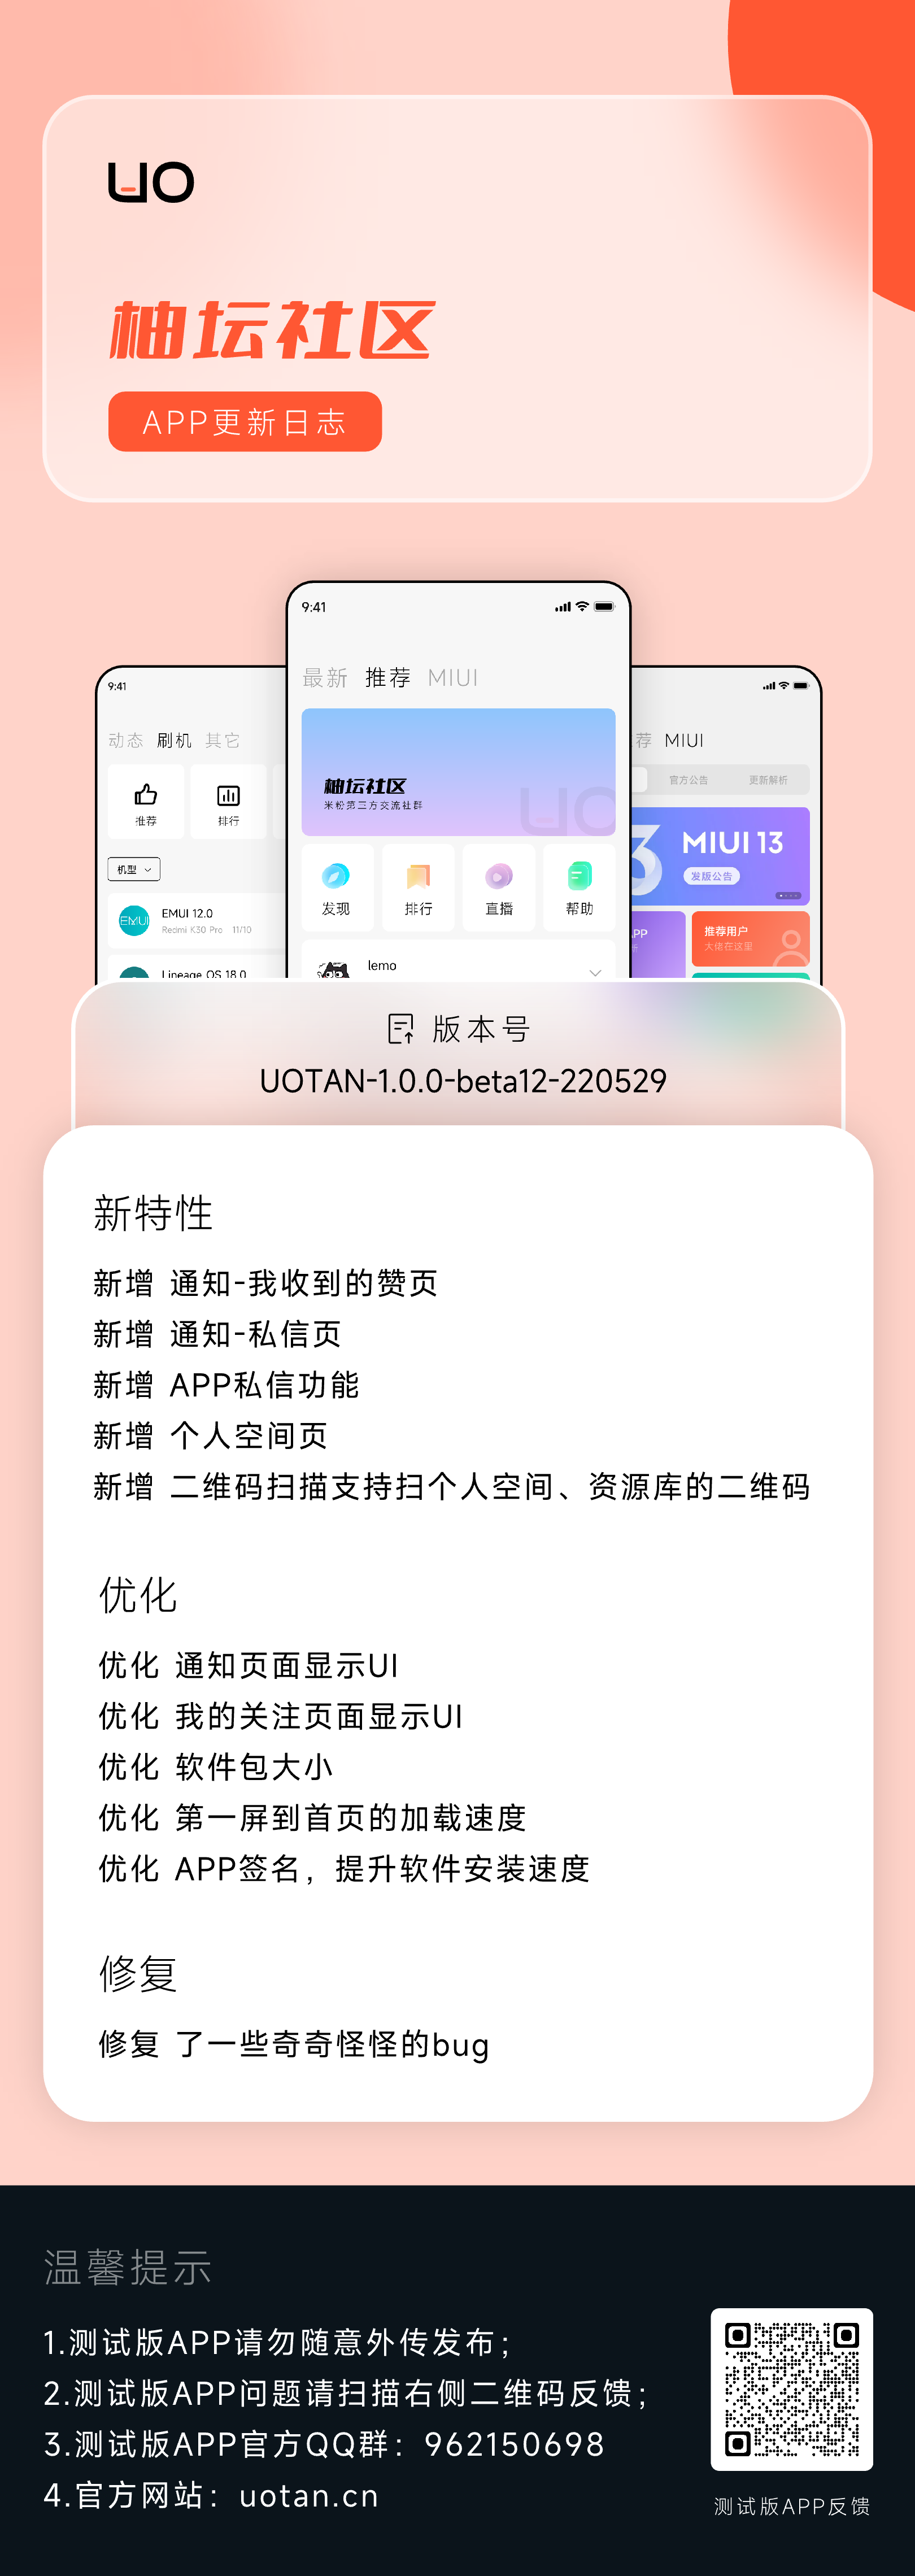 APP更新日志UOTAN-1.0.0-beta12-220529.png